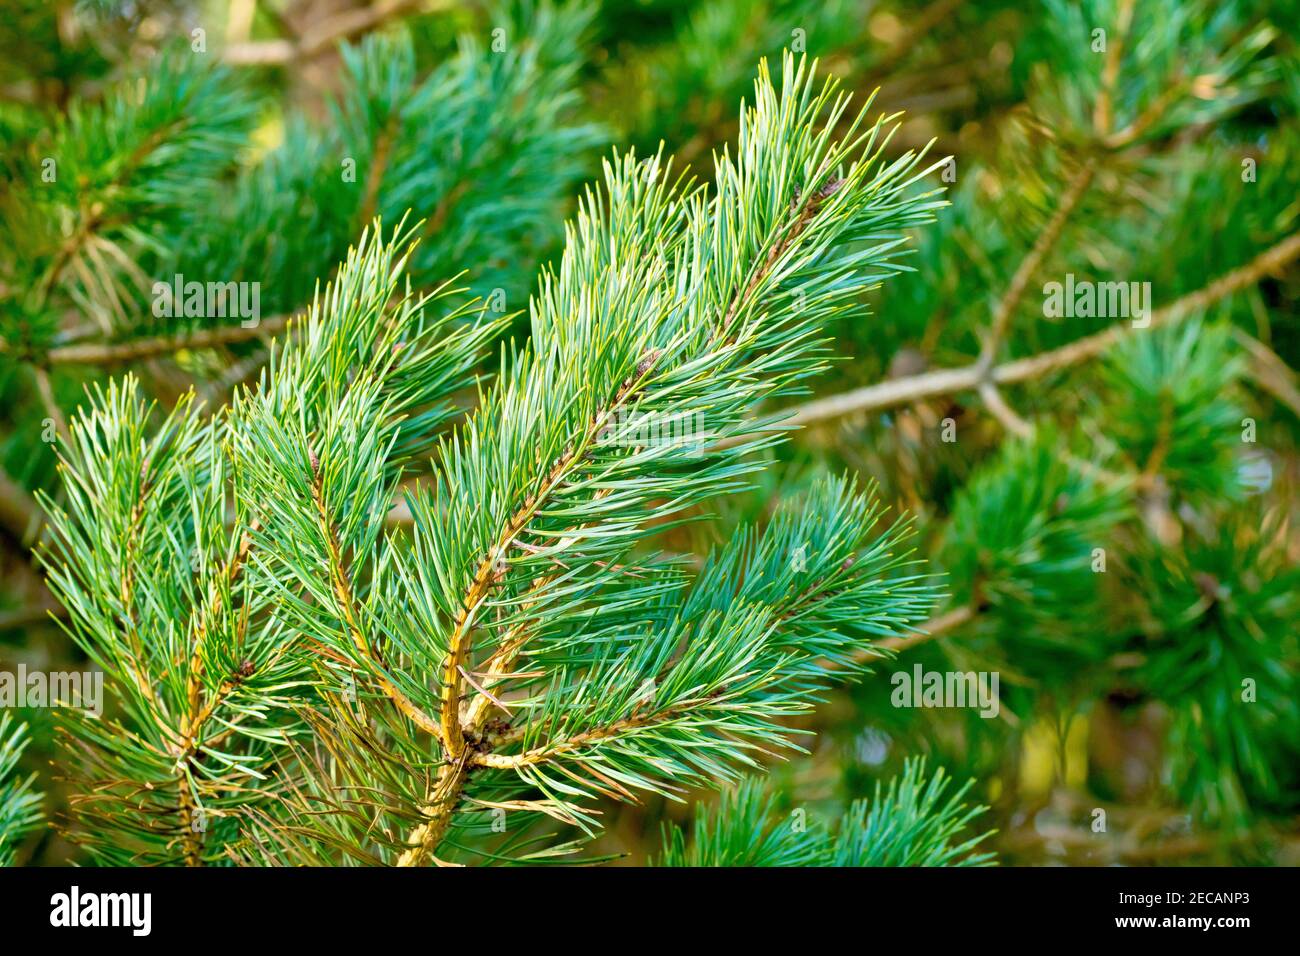 Pino scozzese (pinus sylvestris), primo piano di un ramo dell'albero che mostra il colore giallo dorato della corteccia e degli aghi verdi. Foto Stock